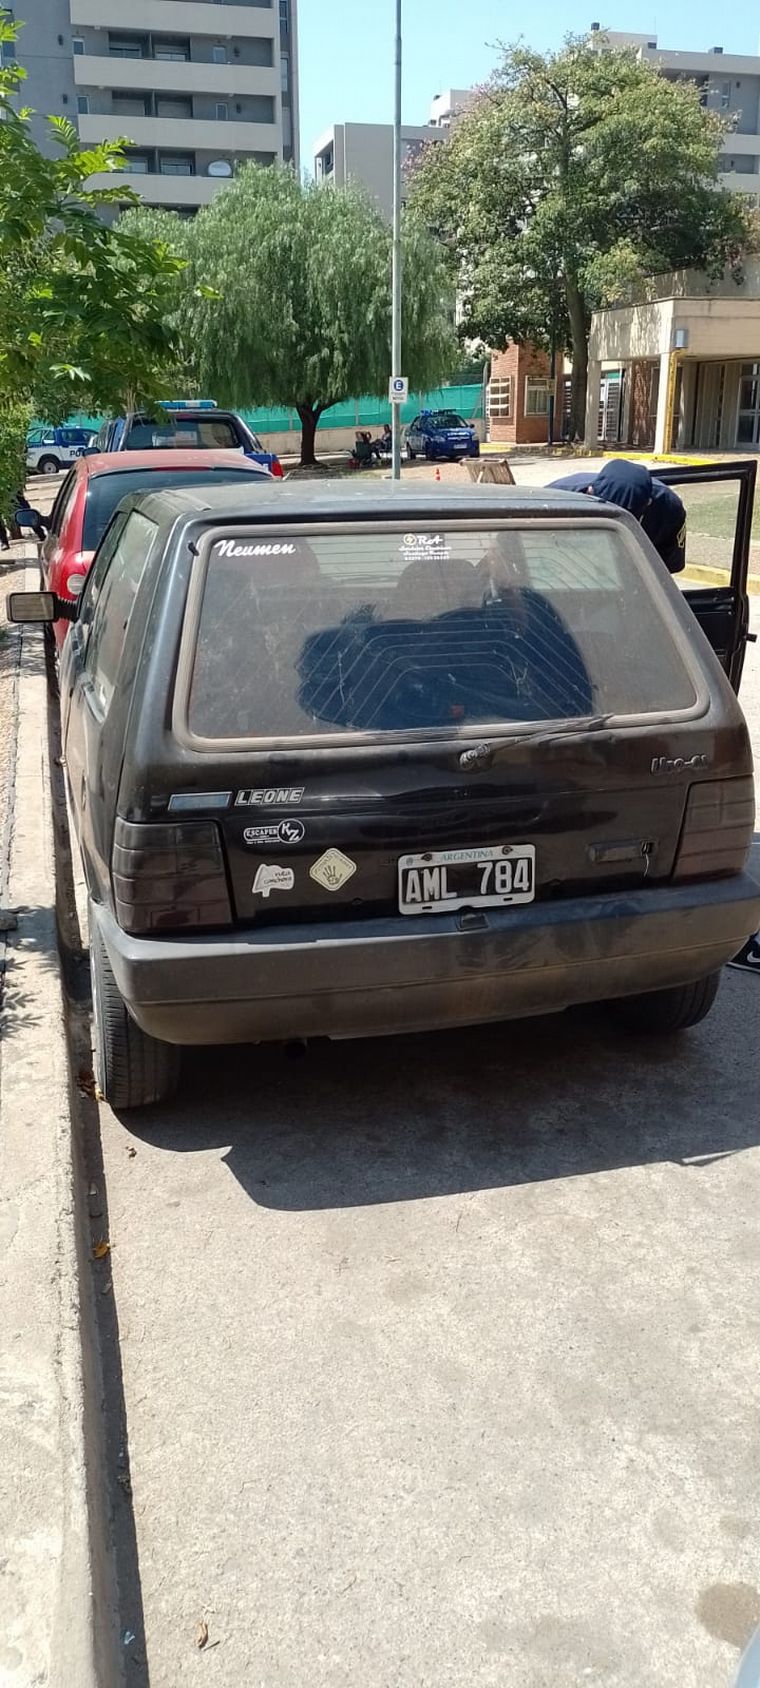 FOTO: Hallaron el auto adaptado que habían robado en Córdoba